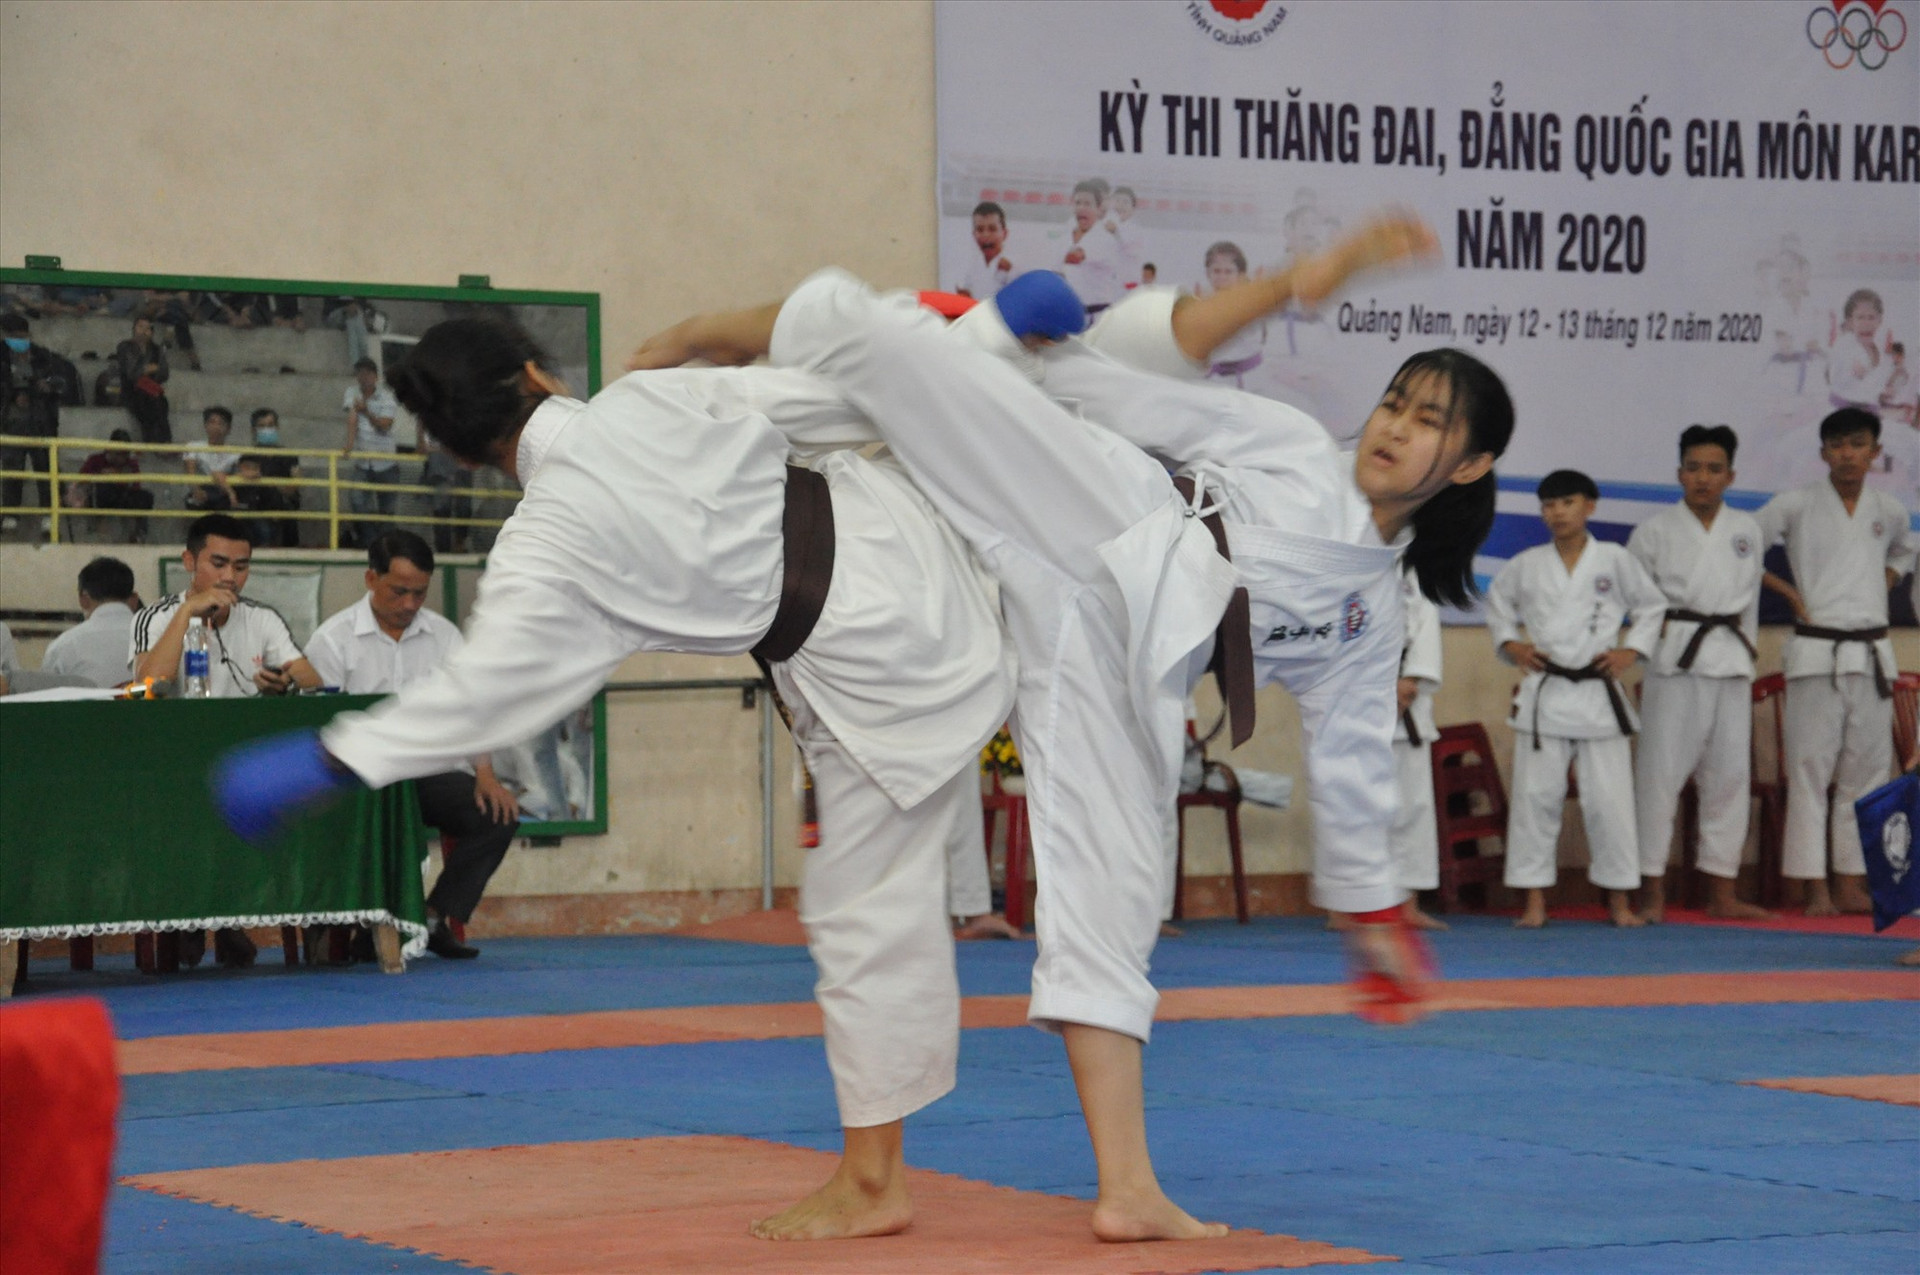 Hội Karate tỉnh Quảng Nam duy trì hàng năm giải vô địch các lứa tuổi và thi thăng đai, đẳng quốc gia, góp phần nâng cao chất lượng phong trào. Ảnh: T.VY